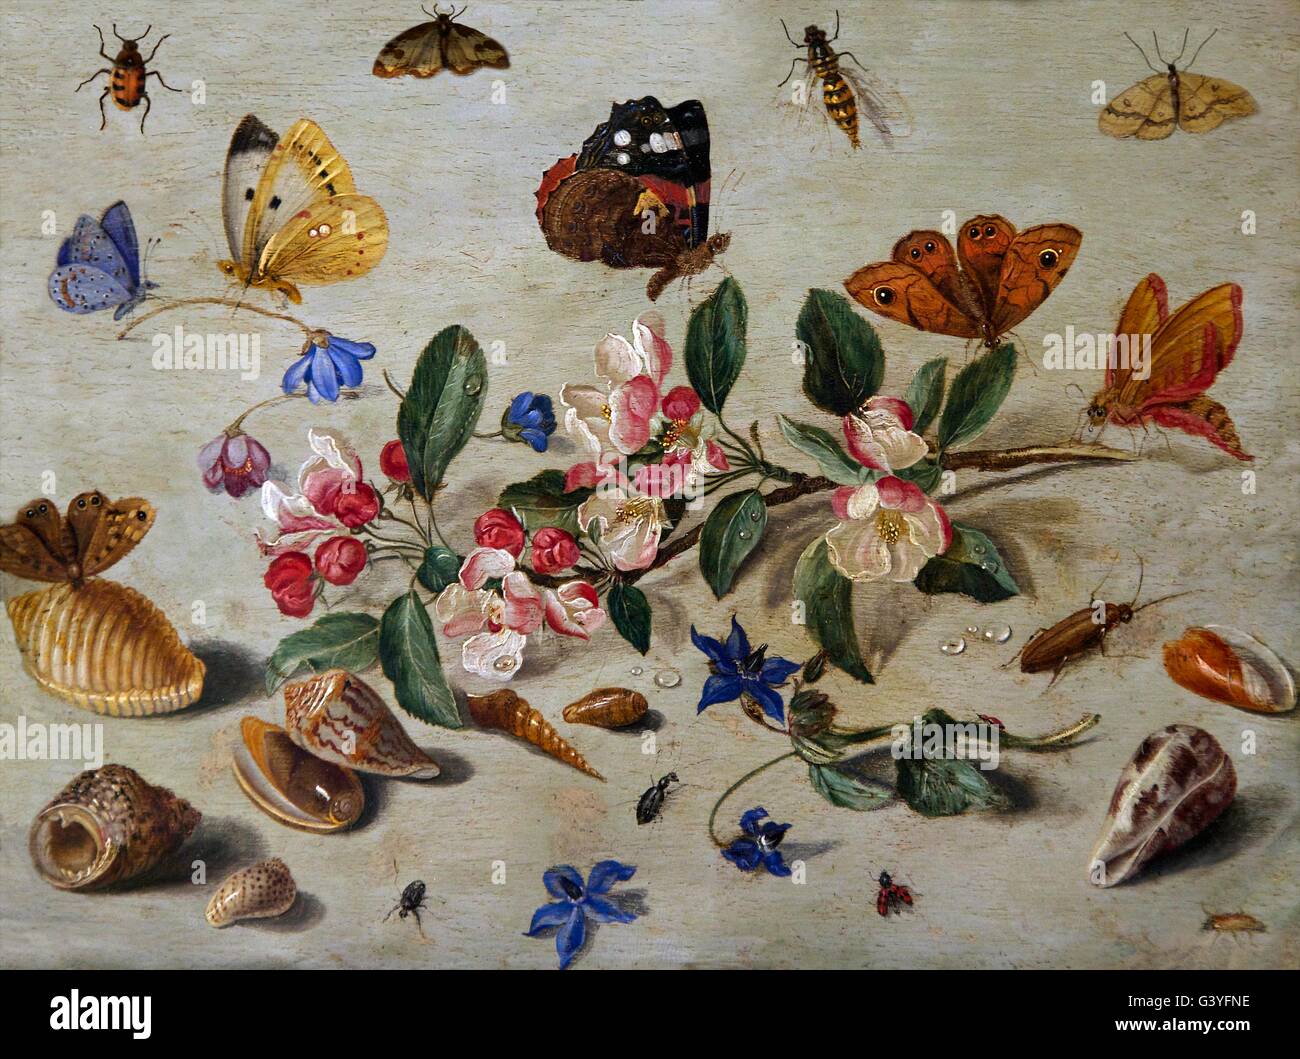 Les fleurs et les insectes, par Jan van Kessel I, Ashmolean Museum, Oxford, Oxfordshire, England, UK, FR, DE L'Europe Banque D'Images